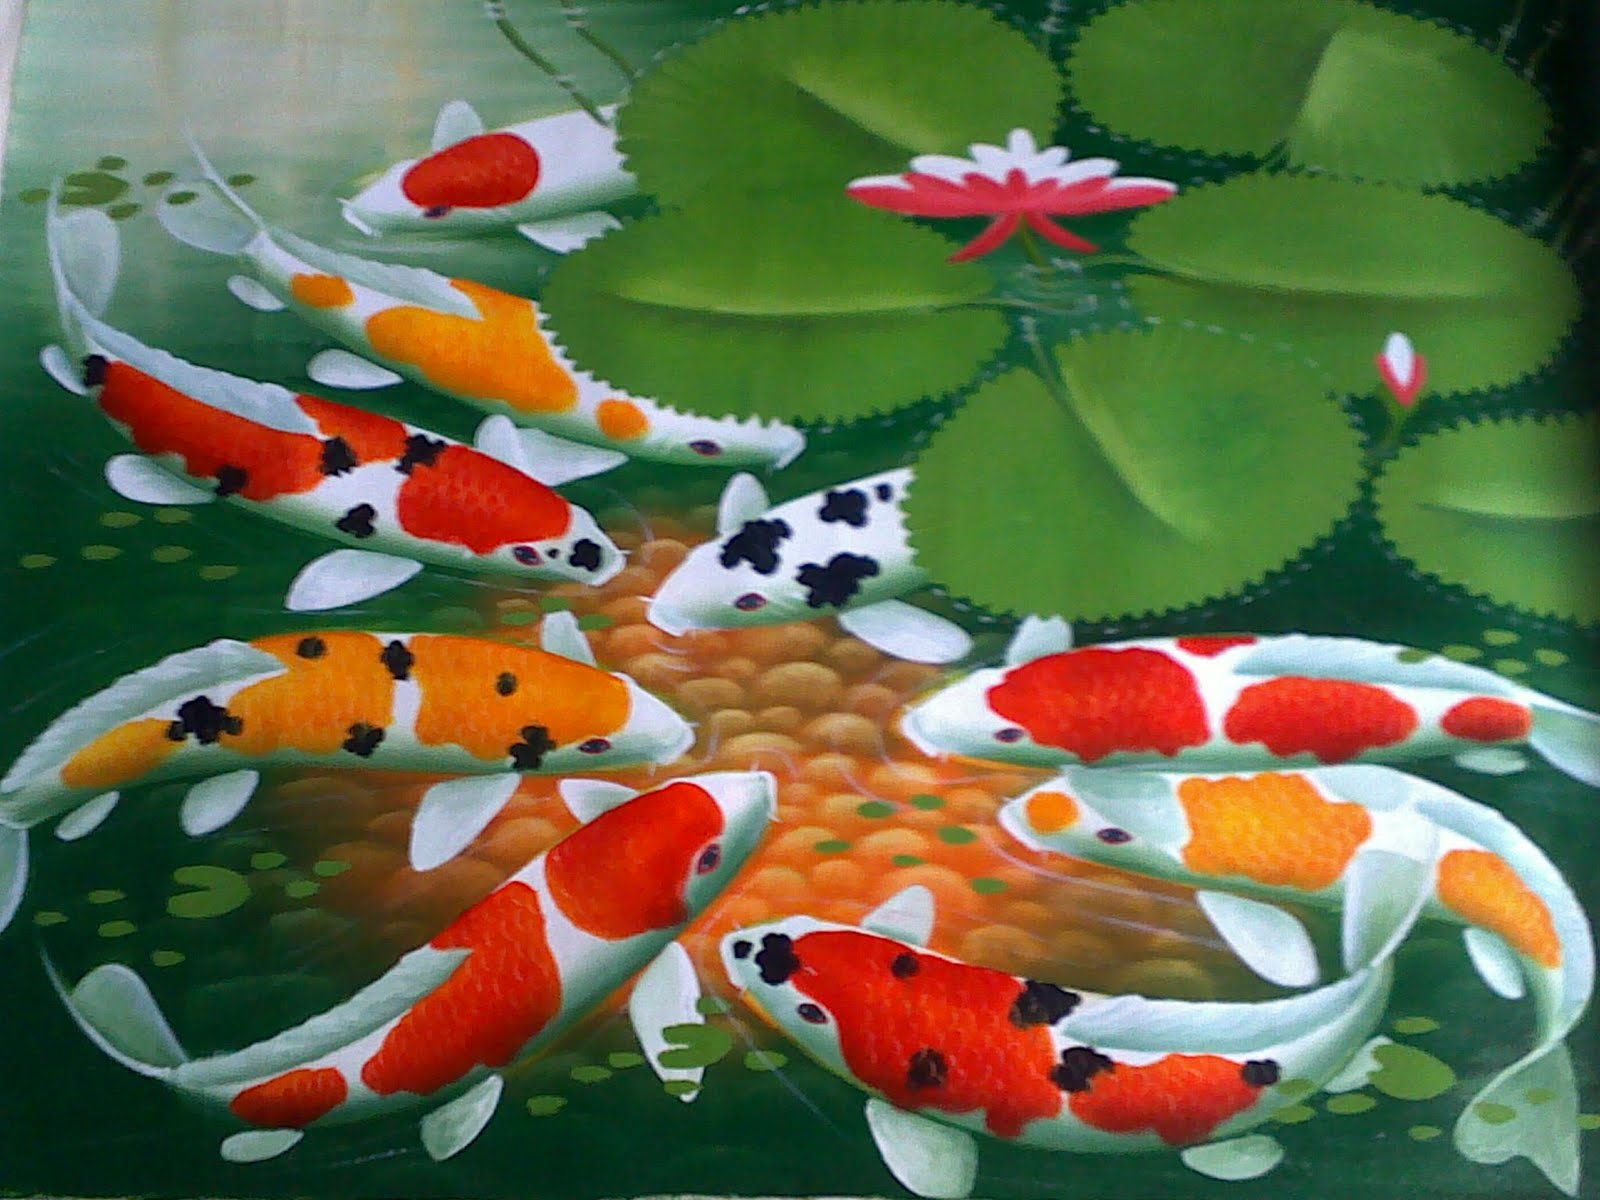  99 Gambar Ikan Bergerak  Untuk Wallpaper Cikimm com